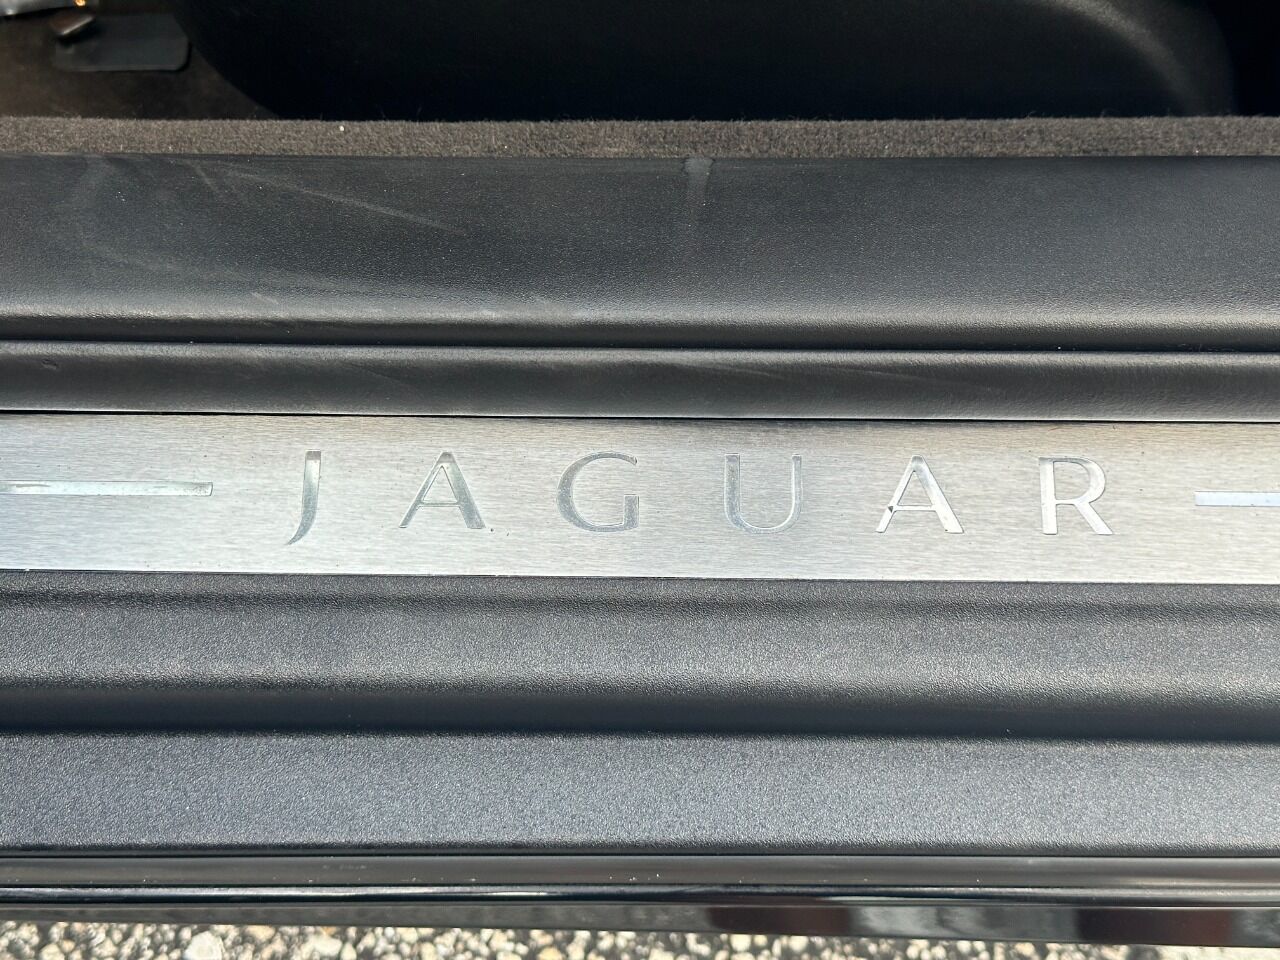 2007 Jaguar XK-Series Convertible - $19,900